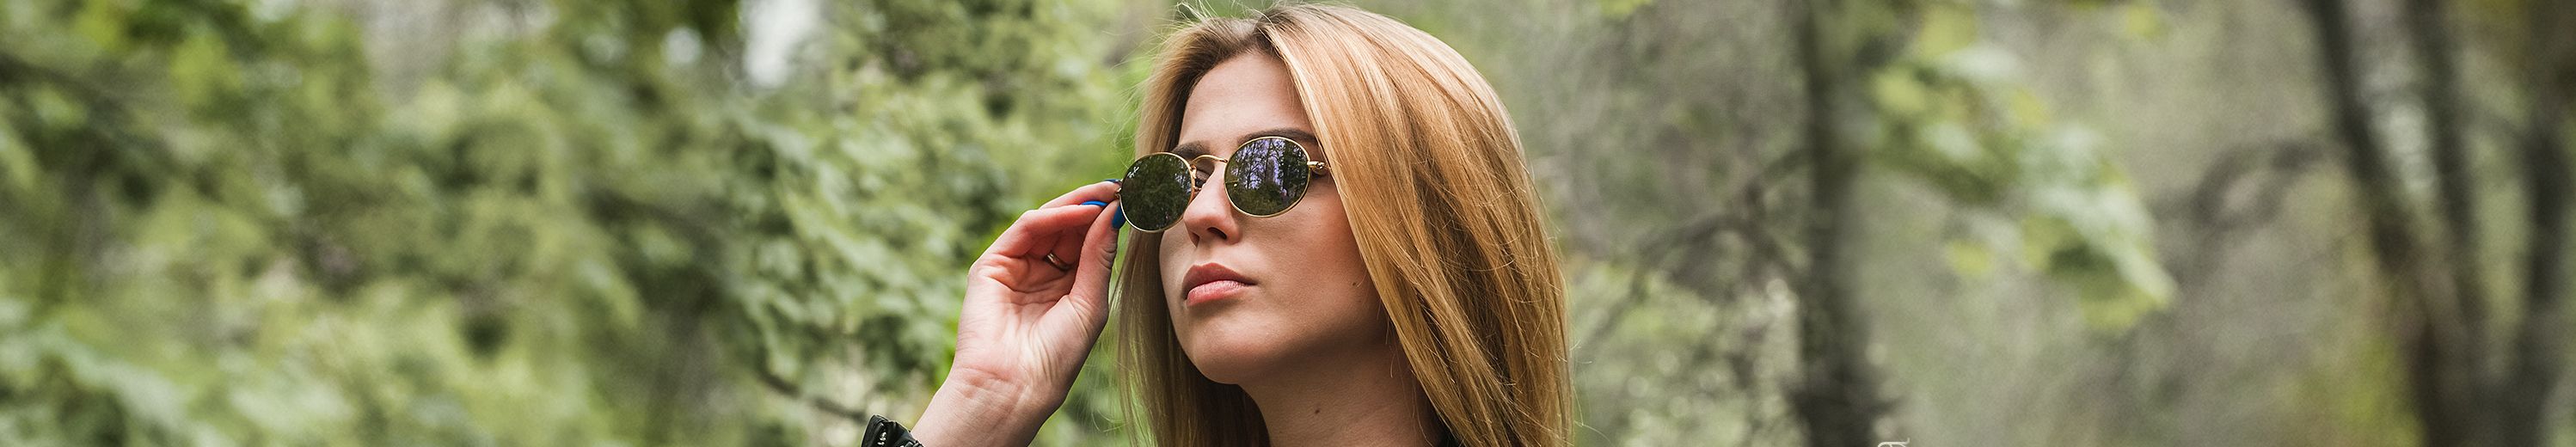 Oval Sunglasses for Men & Women